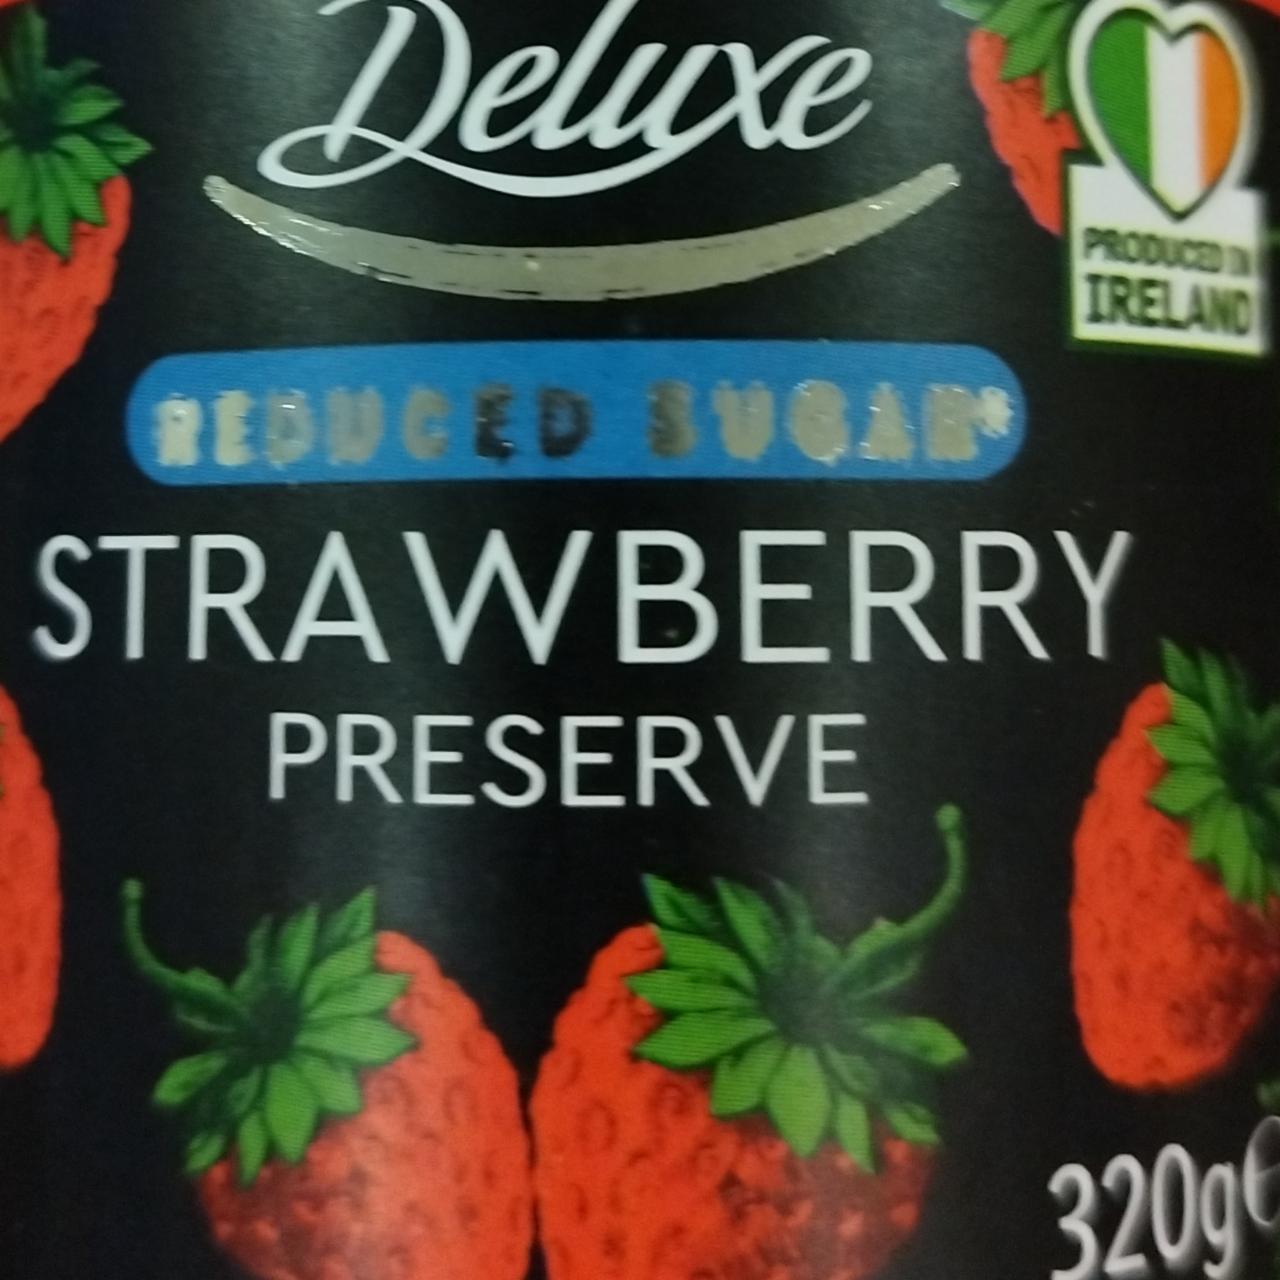 Fotografie - Reduced sugar strawberry preserve Deluxe